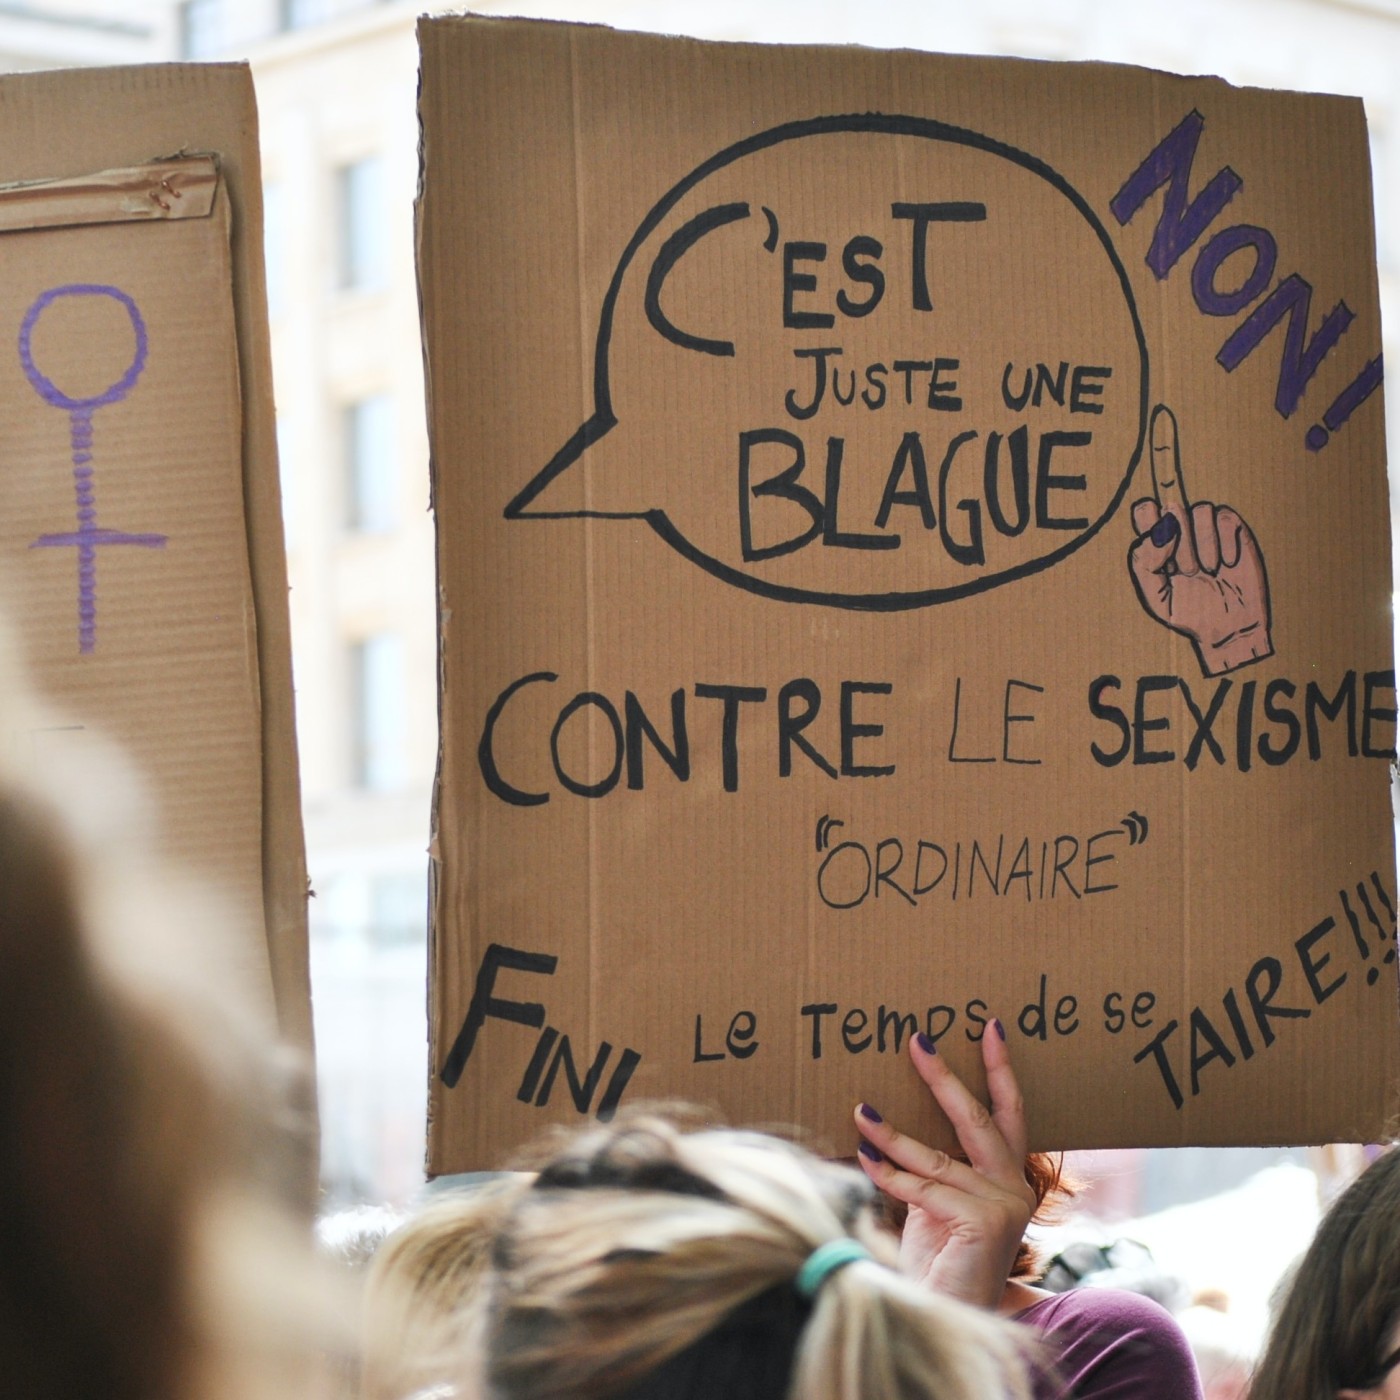 Les outrages sexistes en hausse en France